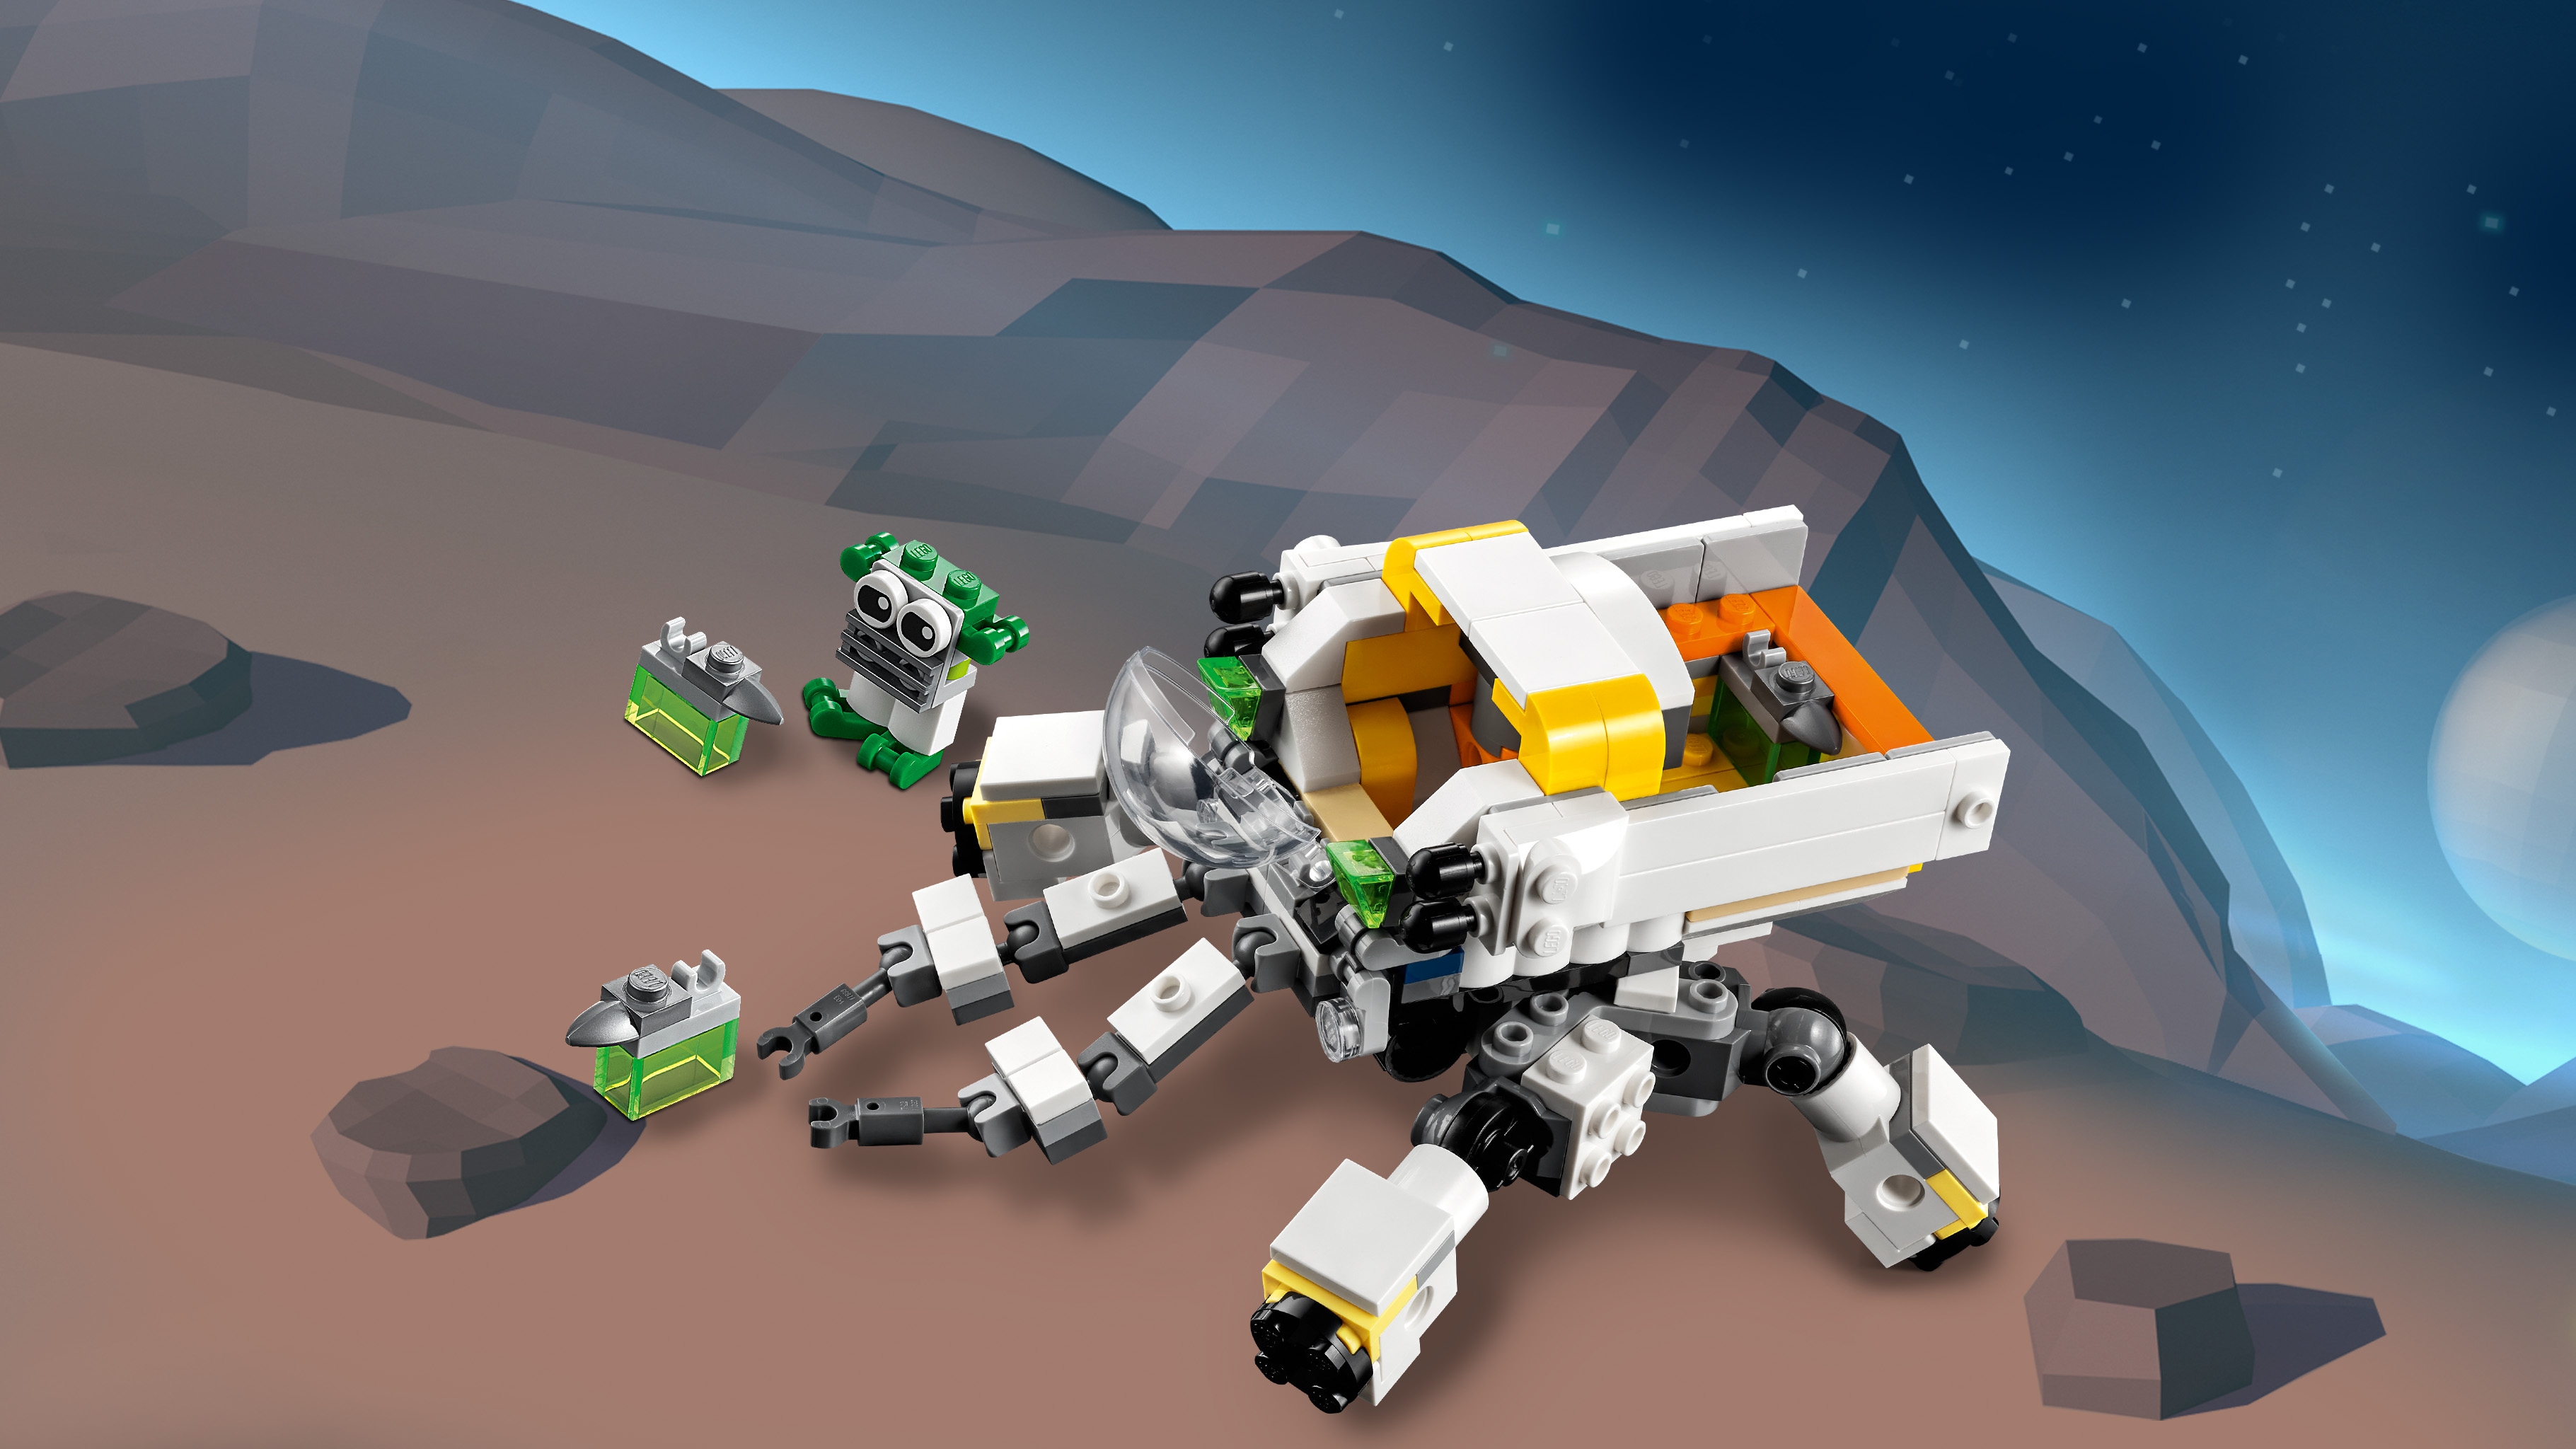 宇宙探査ロボット 31115 - レゴ®クリエイターセット - LEGO.comキッズ